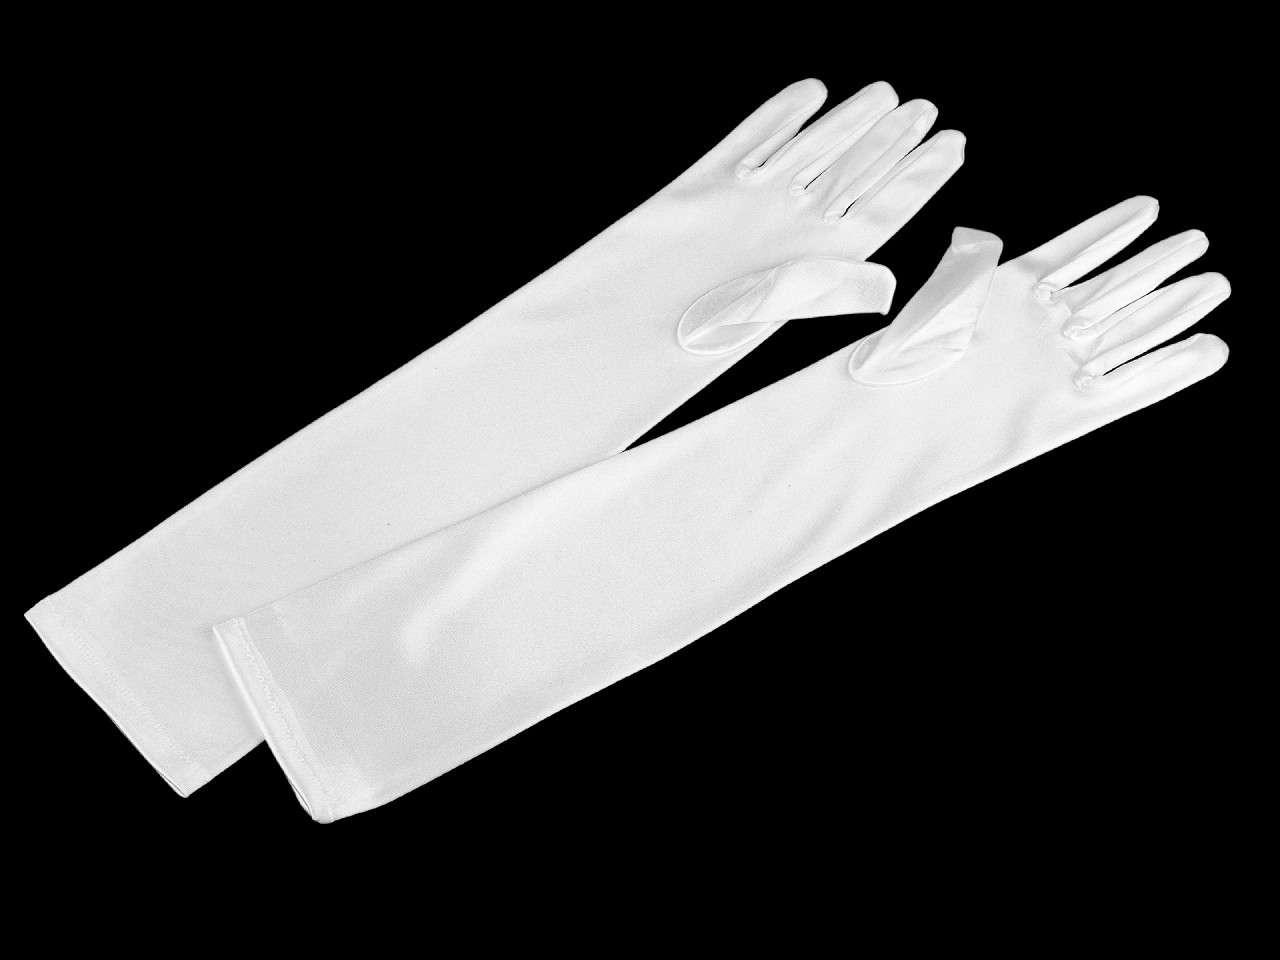 Dlouhé společenské rukavice saténové, barva 3 (43 cm) bílá